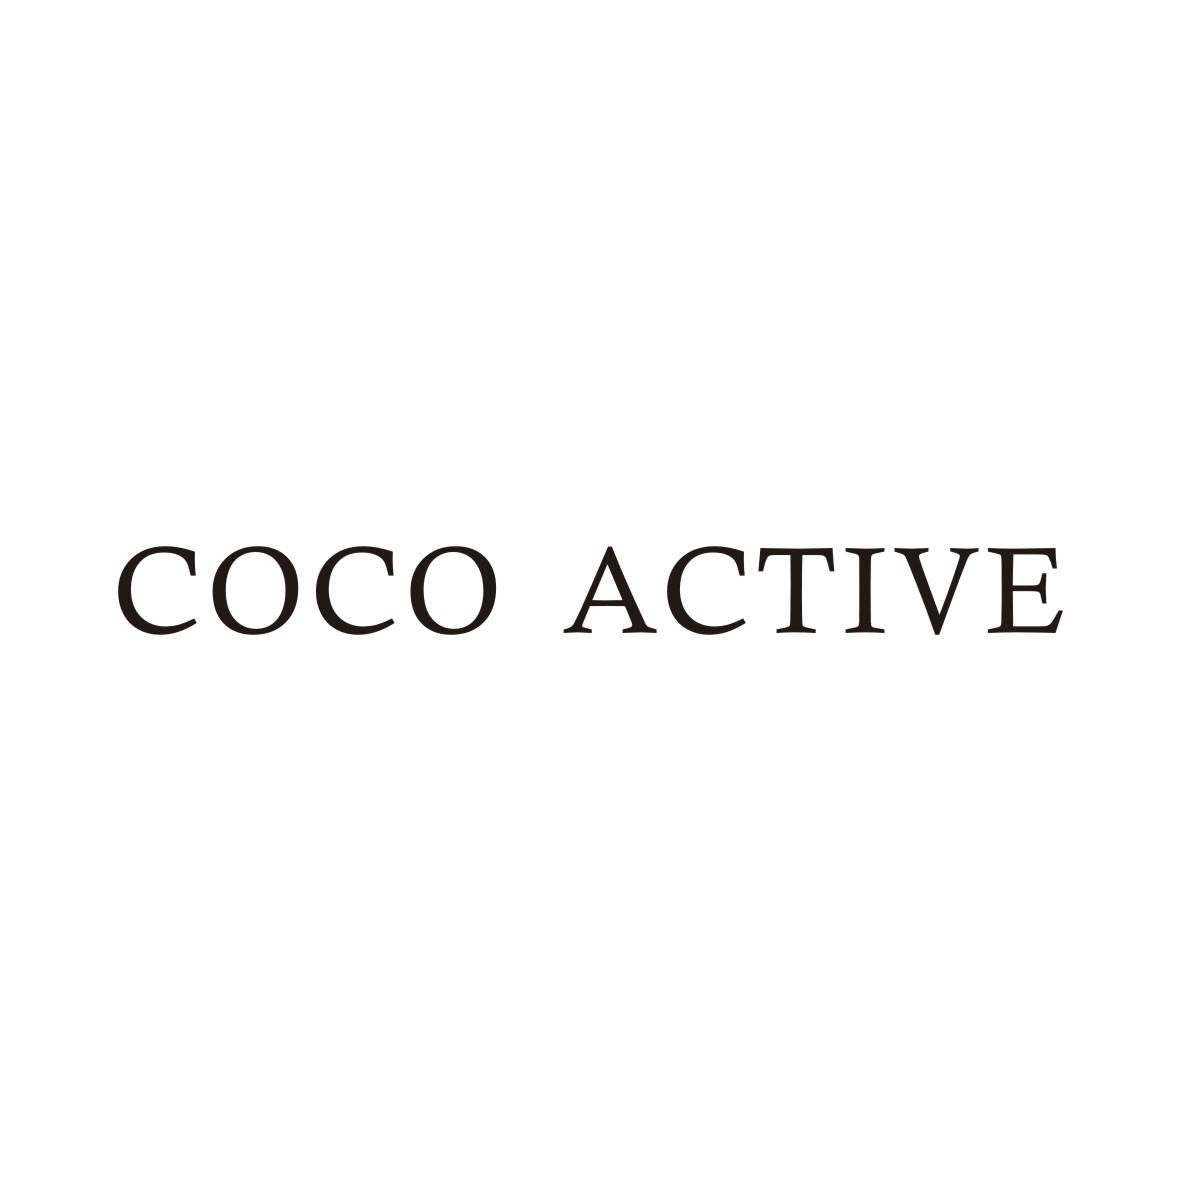 COCO ACTIVE